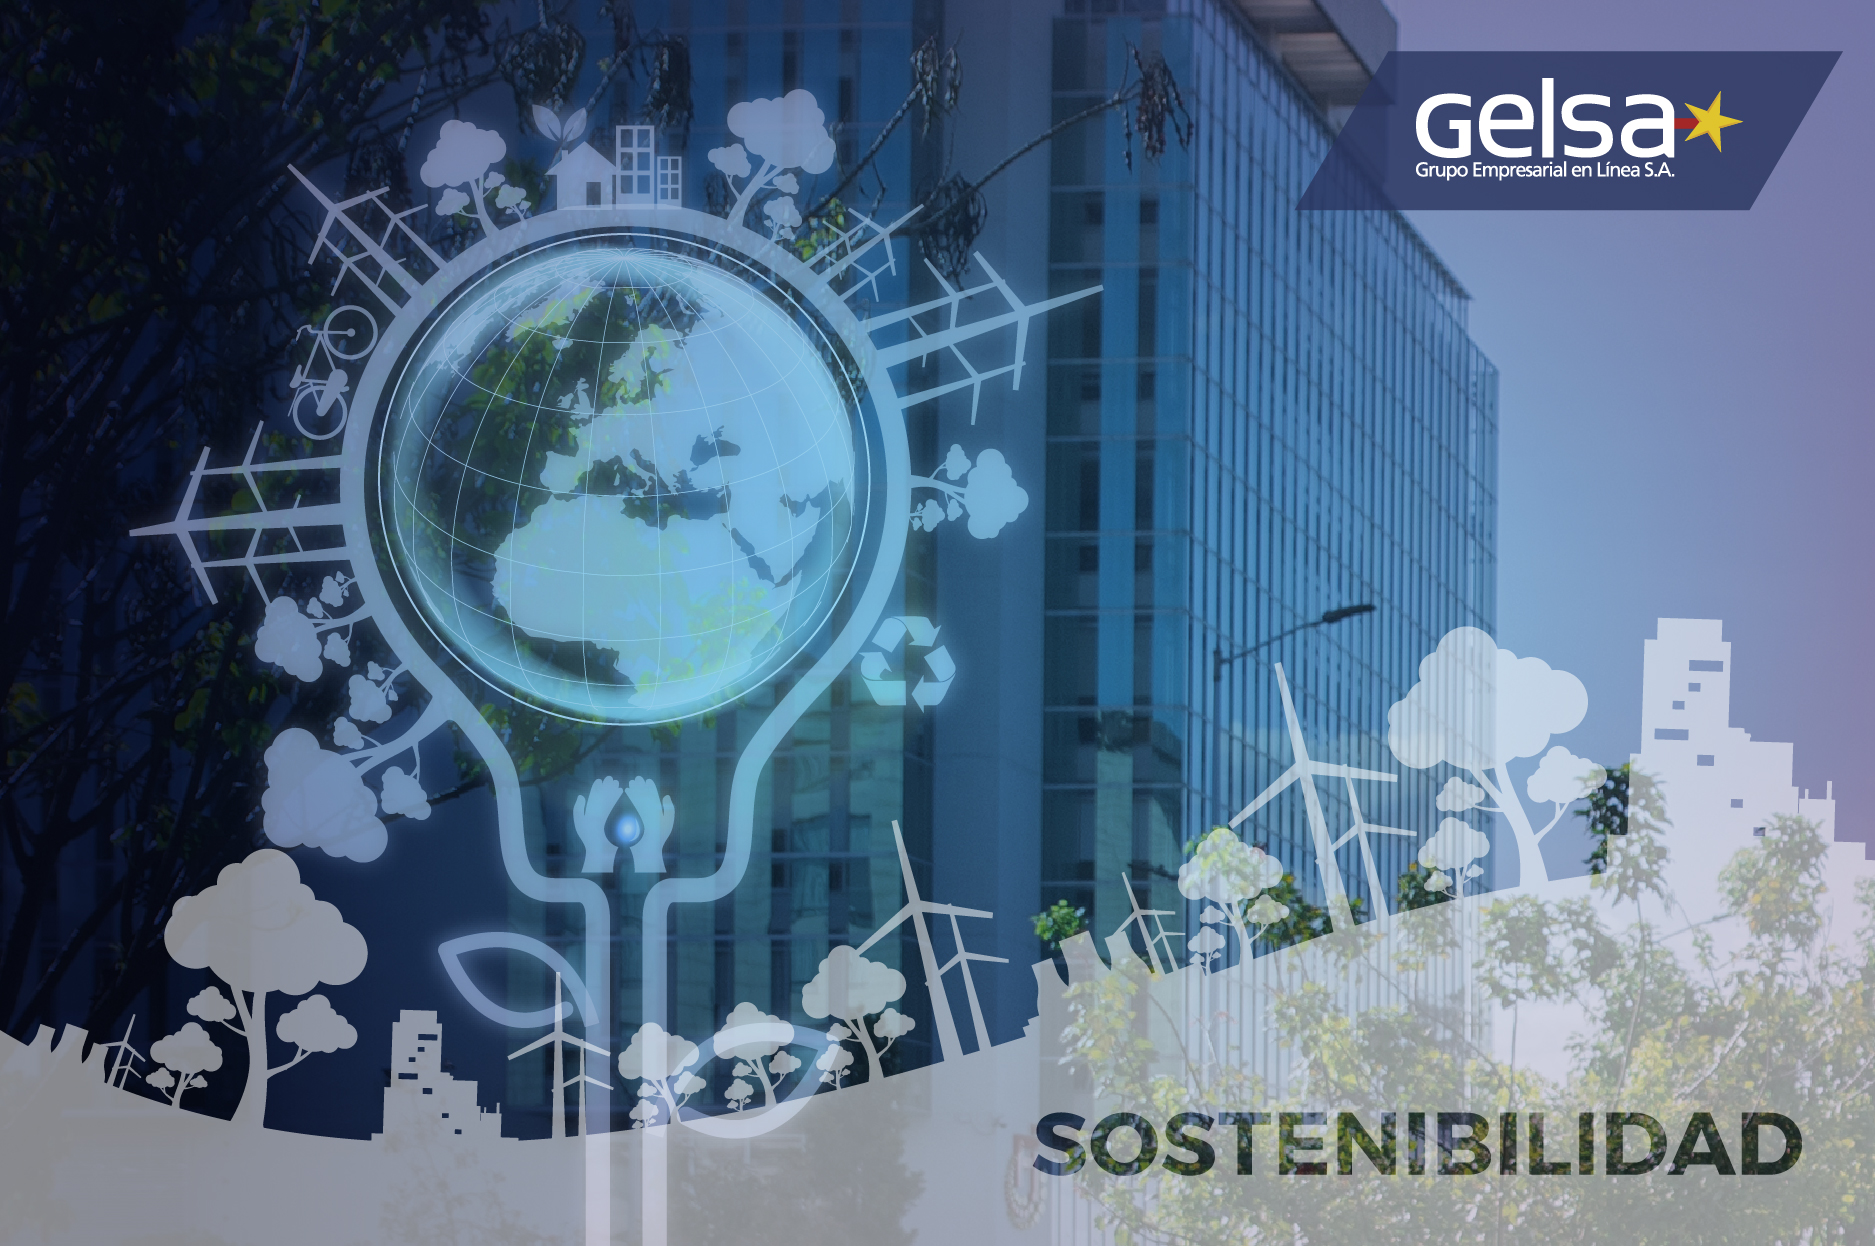 ¿Cómo generamos sostenibilidad desde nuestro negocio?